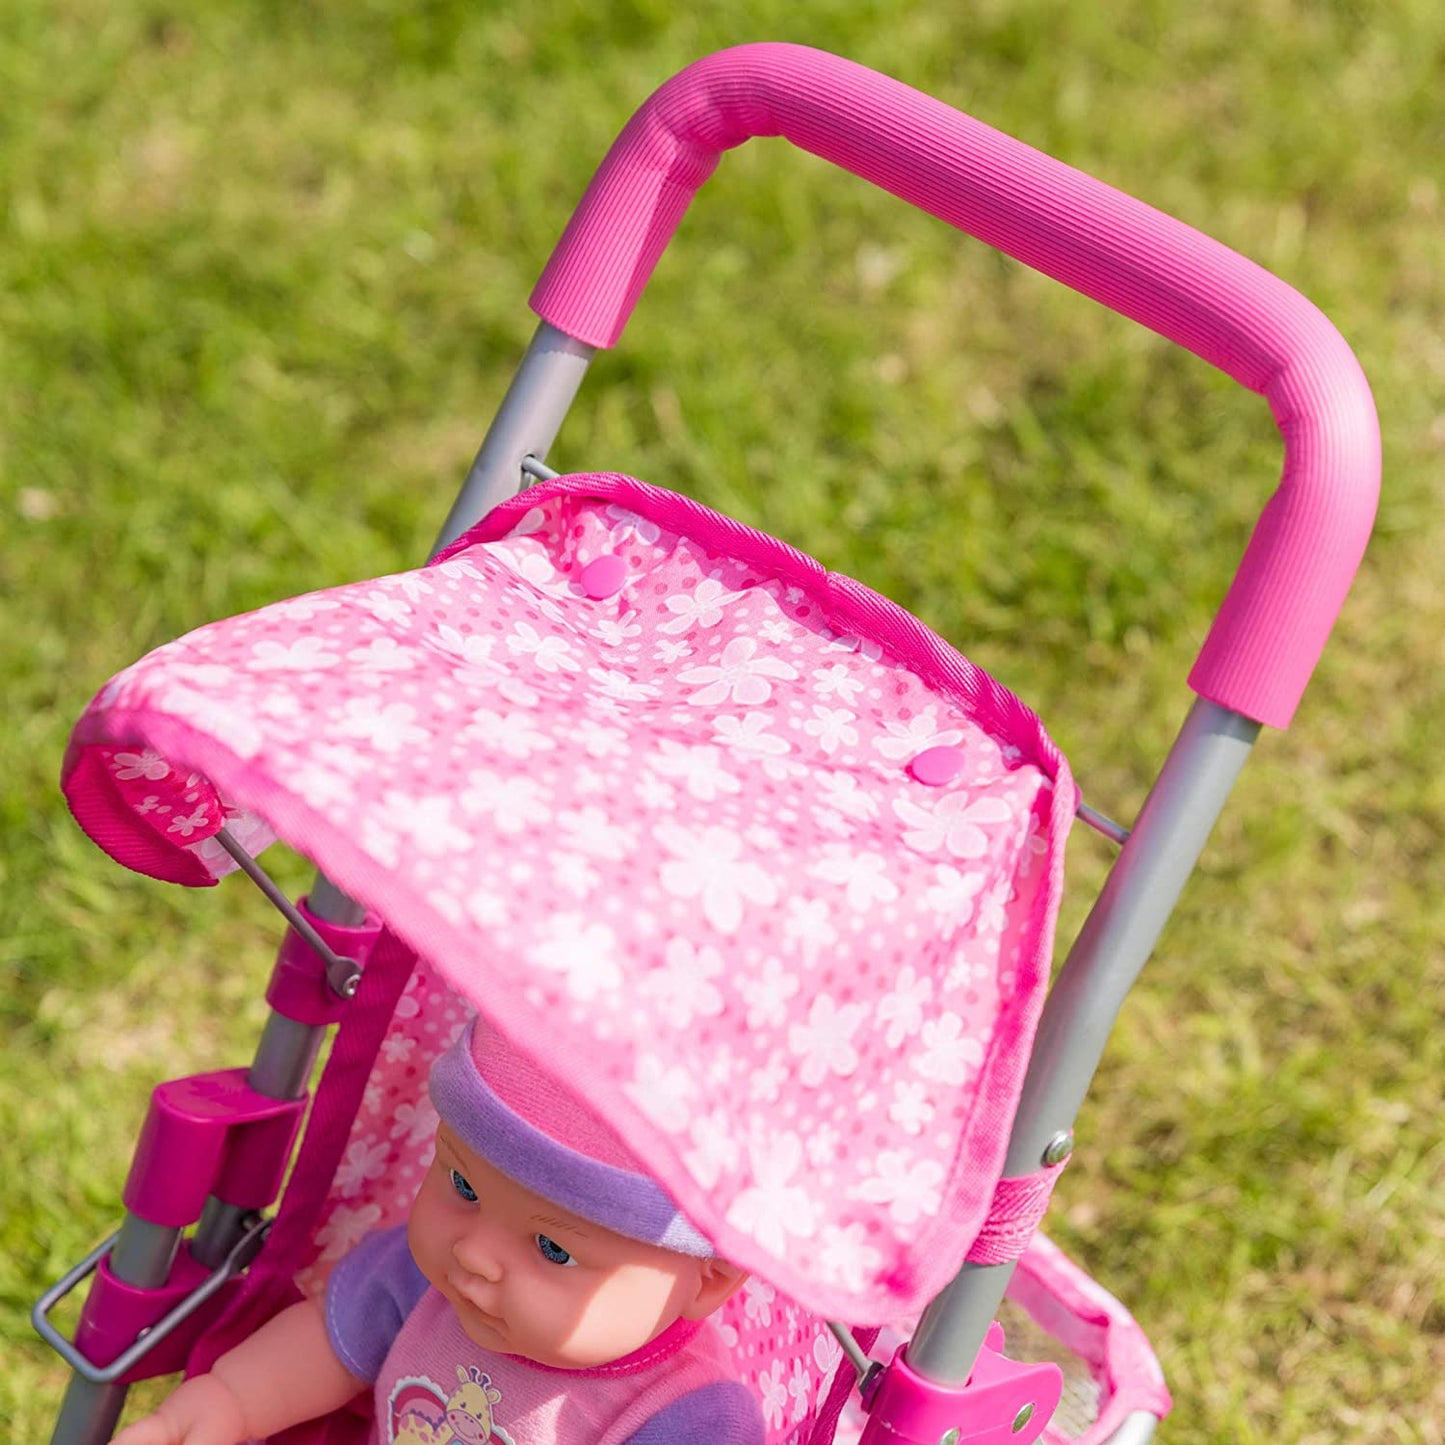 Snuggles Deluxe Dolls Stroller for Kids